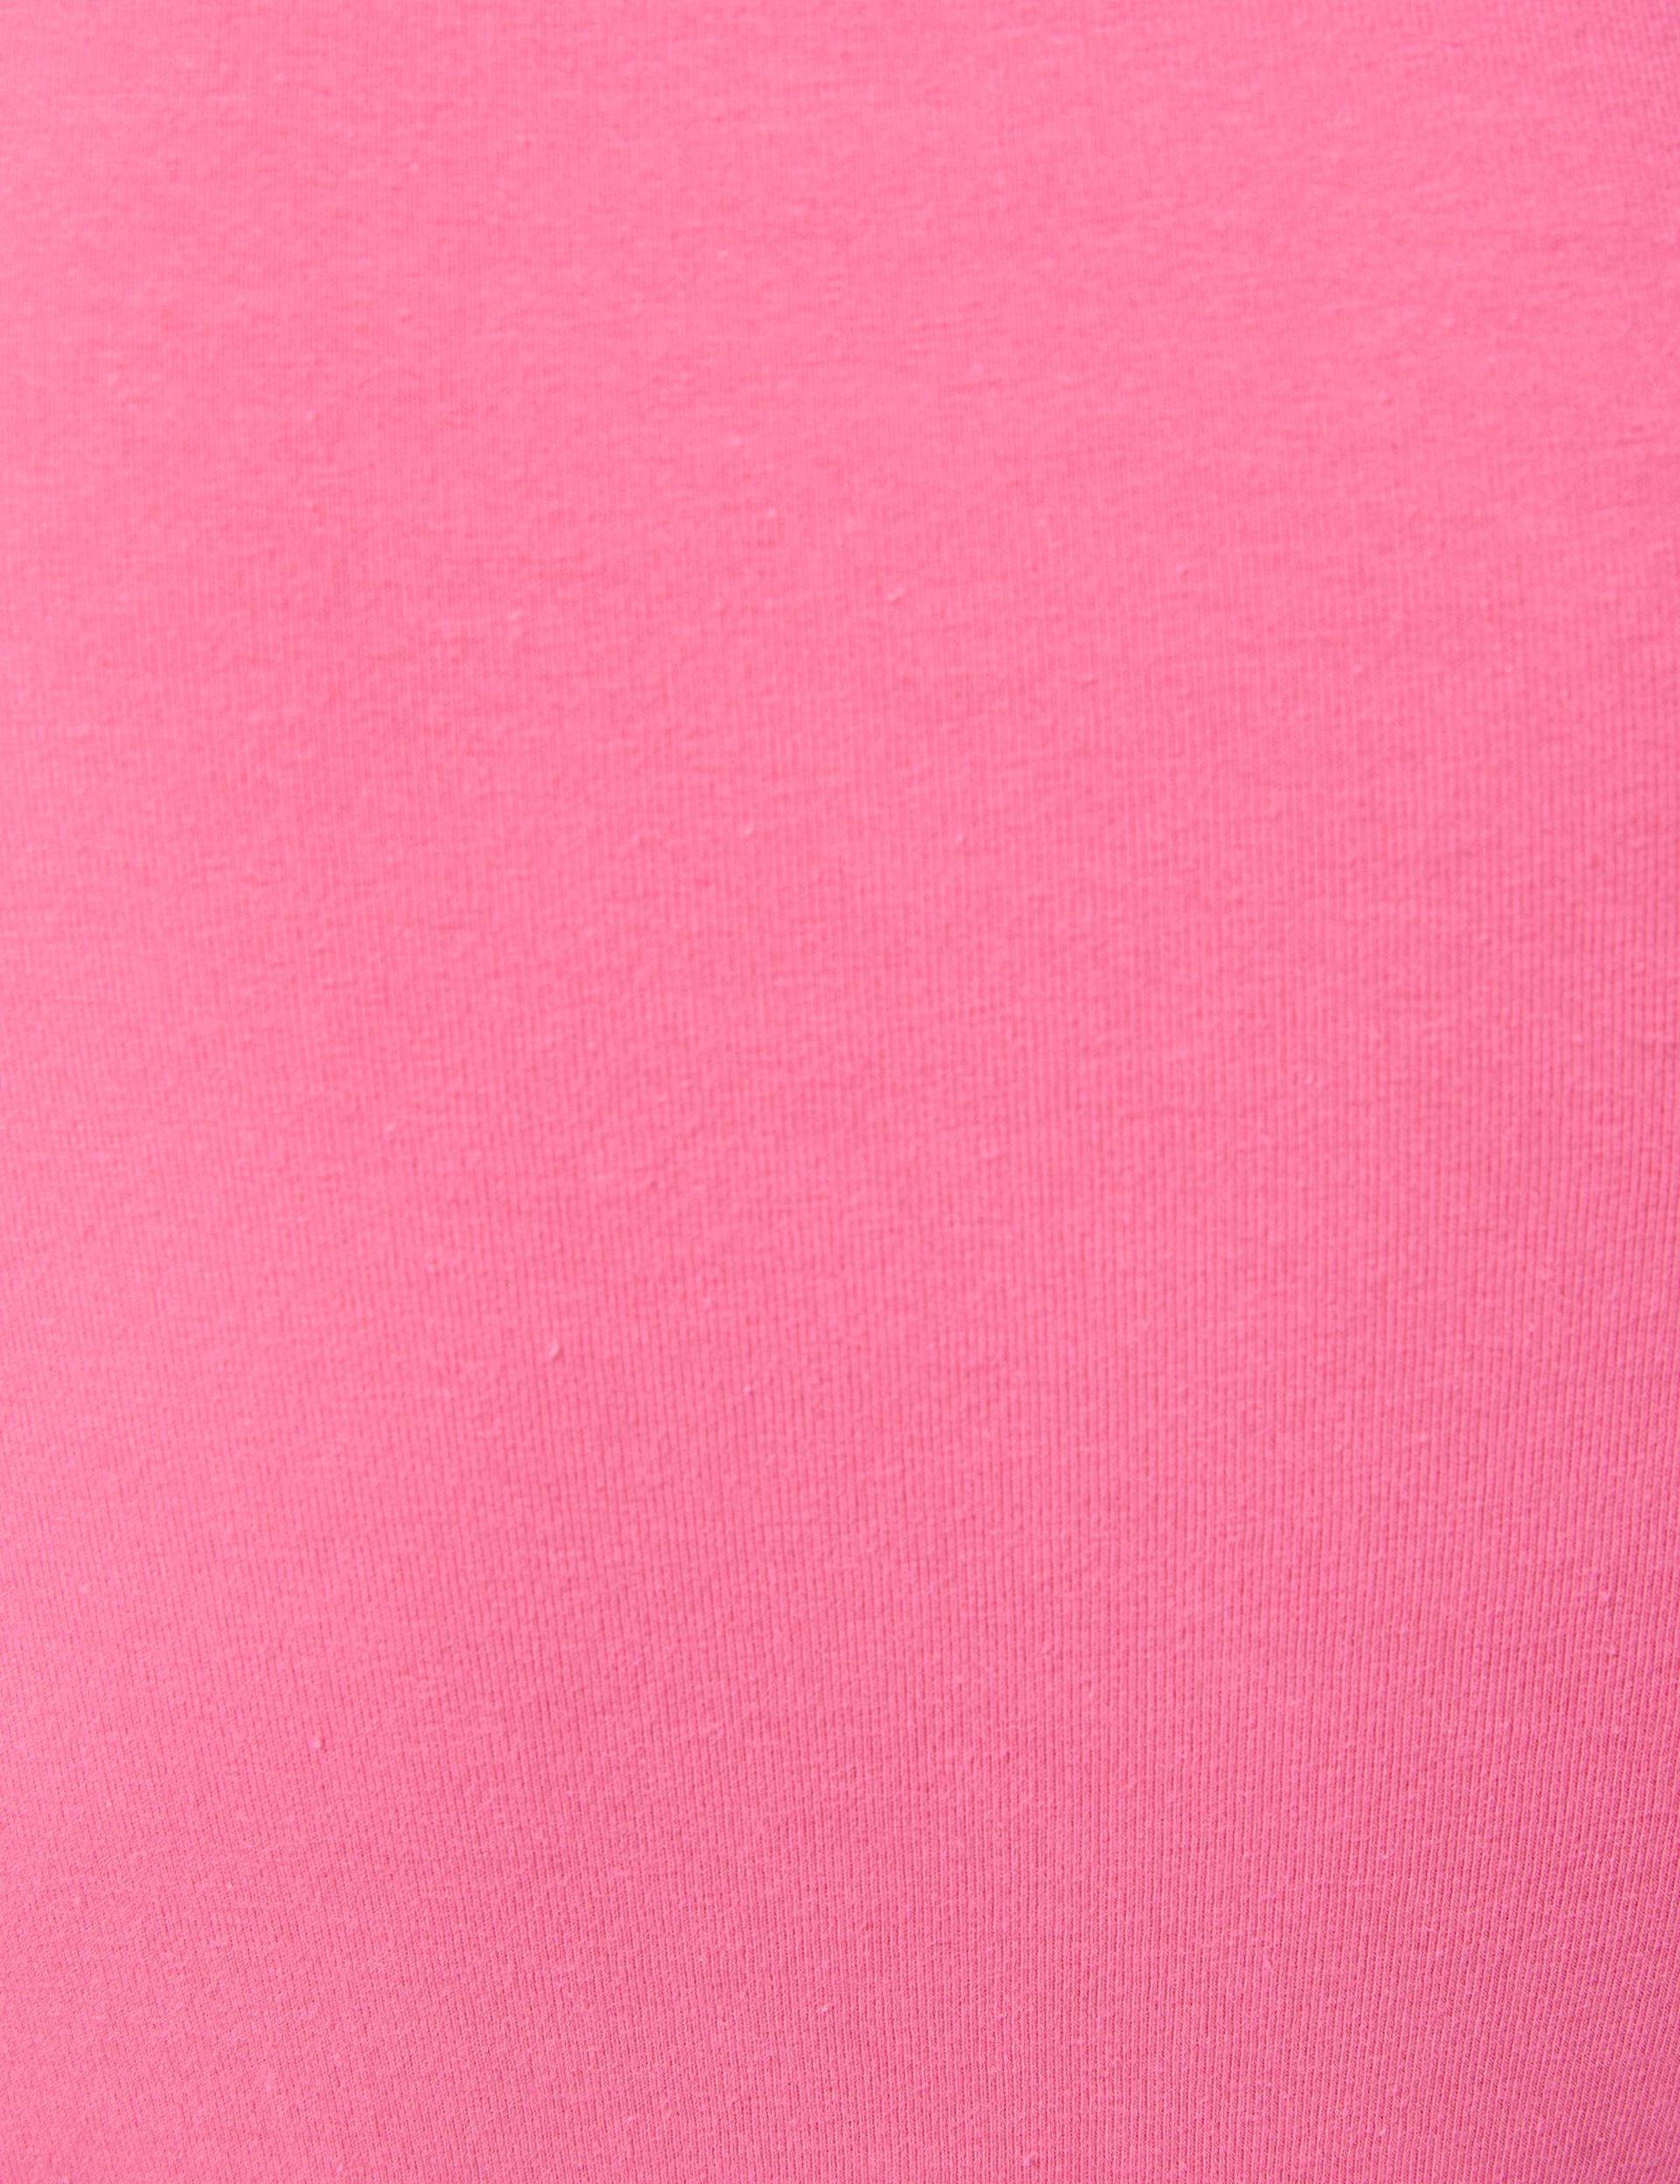 Tee-shirt avec fronces rose